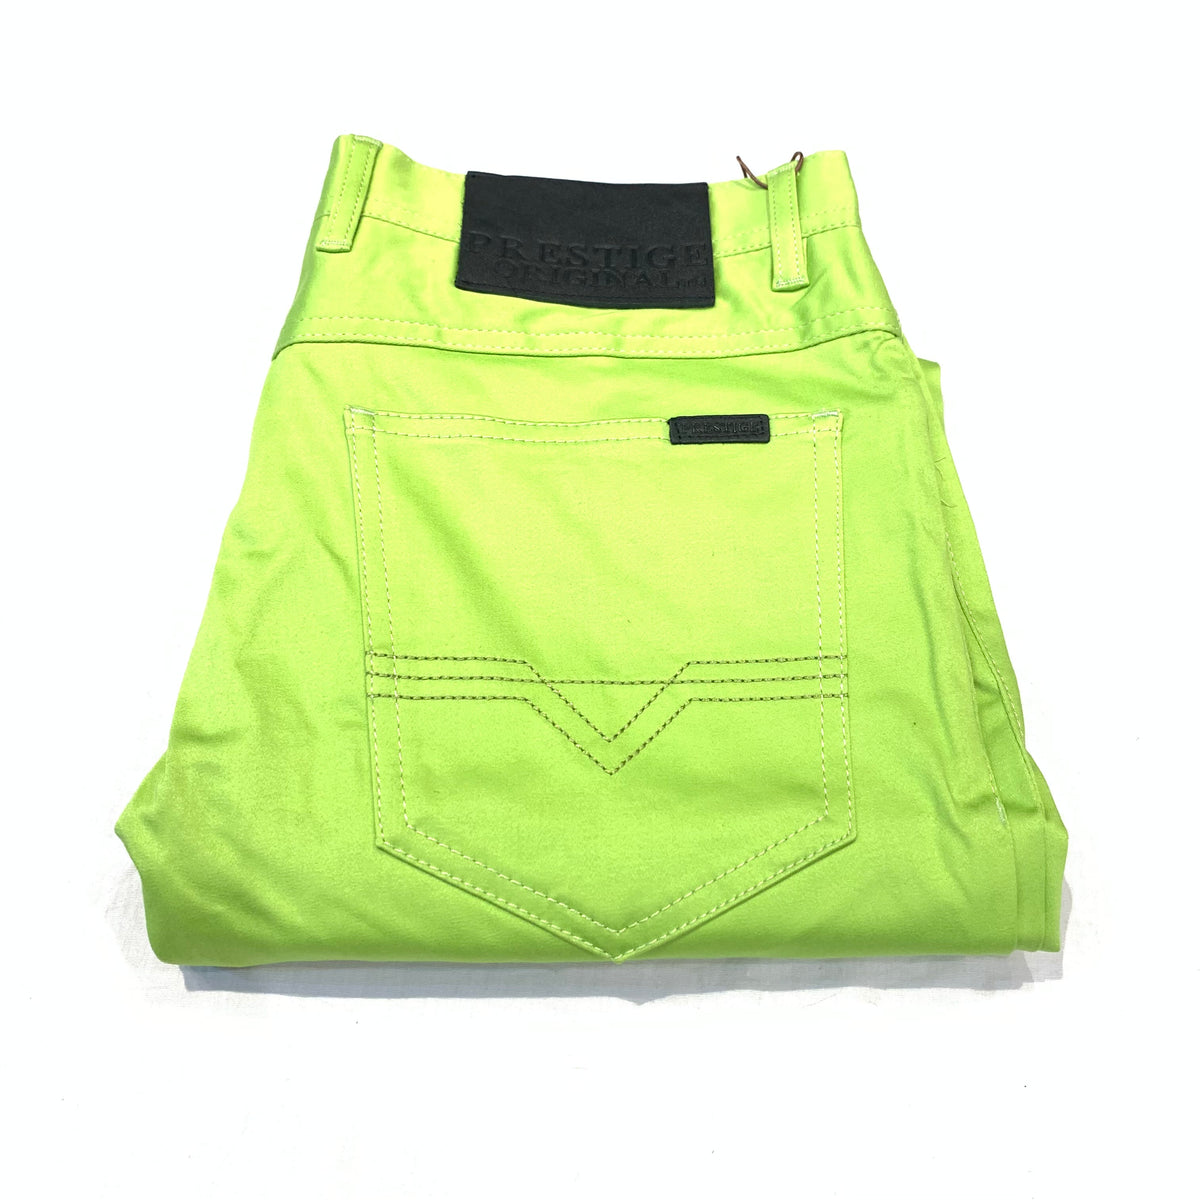 Prestige Neon Green High-end Pants - Dudes Boutique